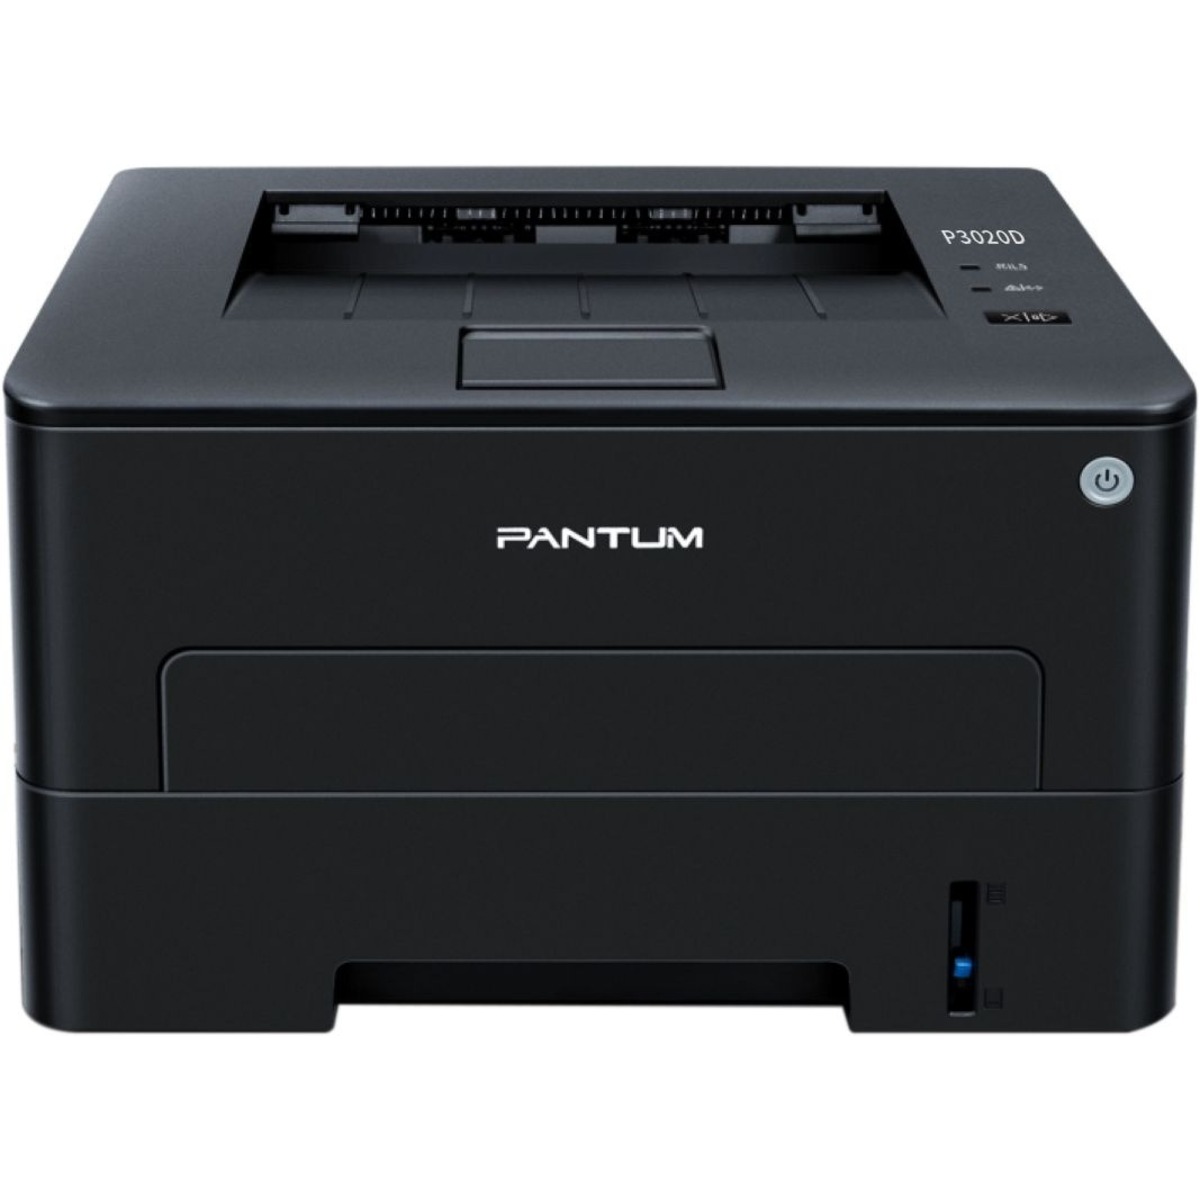 Принтер лазерный Pantum P3020D, черный